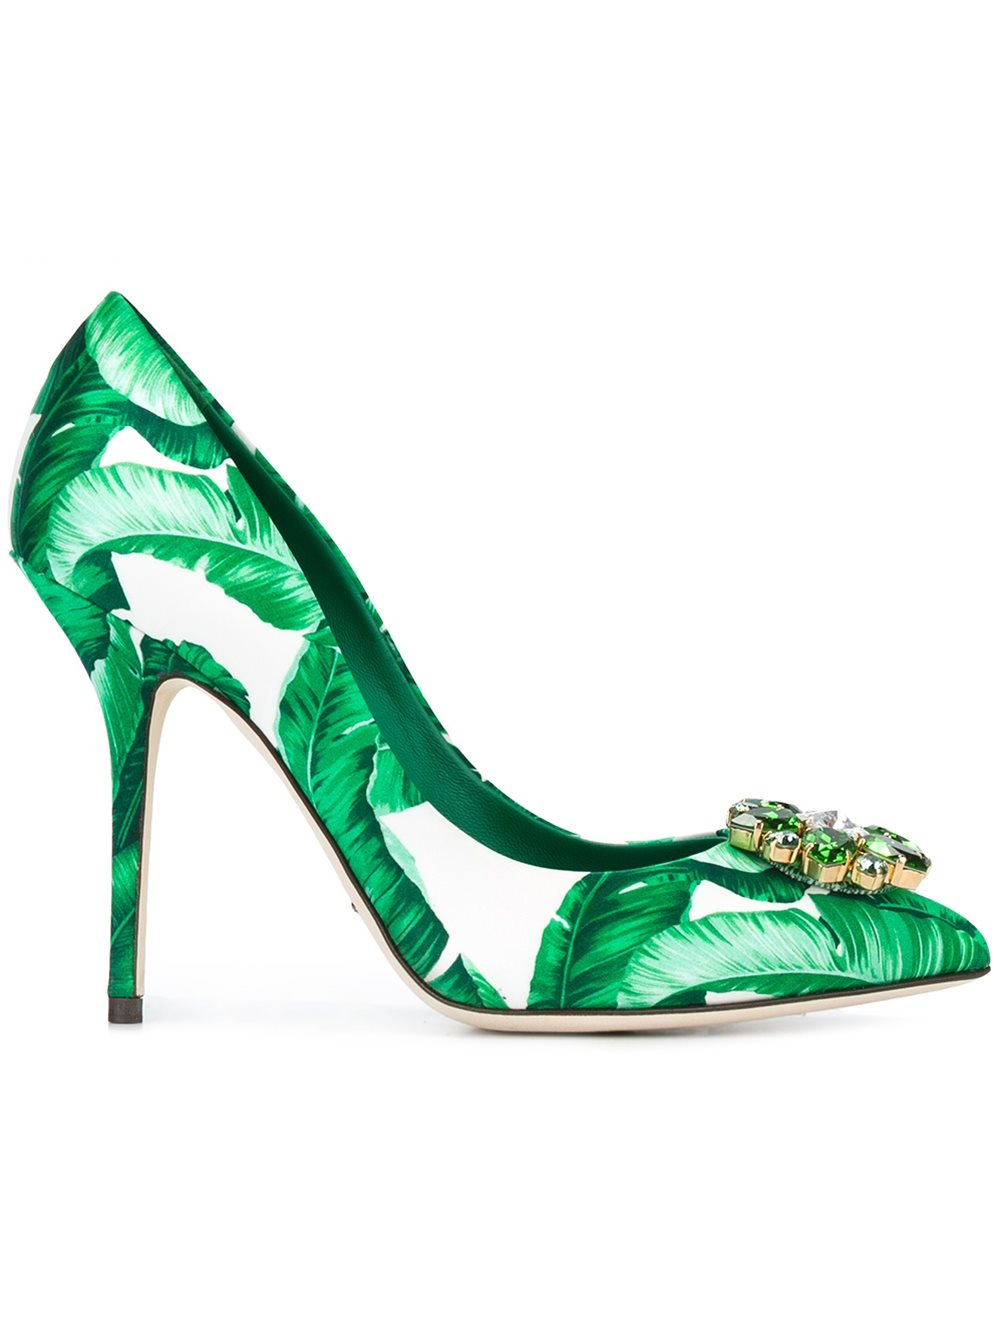 Dolce зеленые. Обувь Дольче Габбана зеленая. Дольче Габбана туфли зеленые. Dolce Gabbana a3496 туфли. Valley Dolce Gabbana glitter туфли.